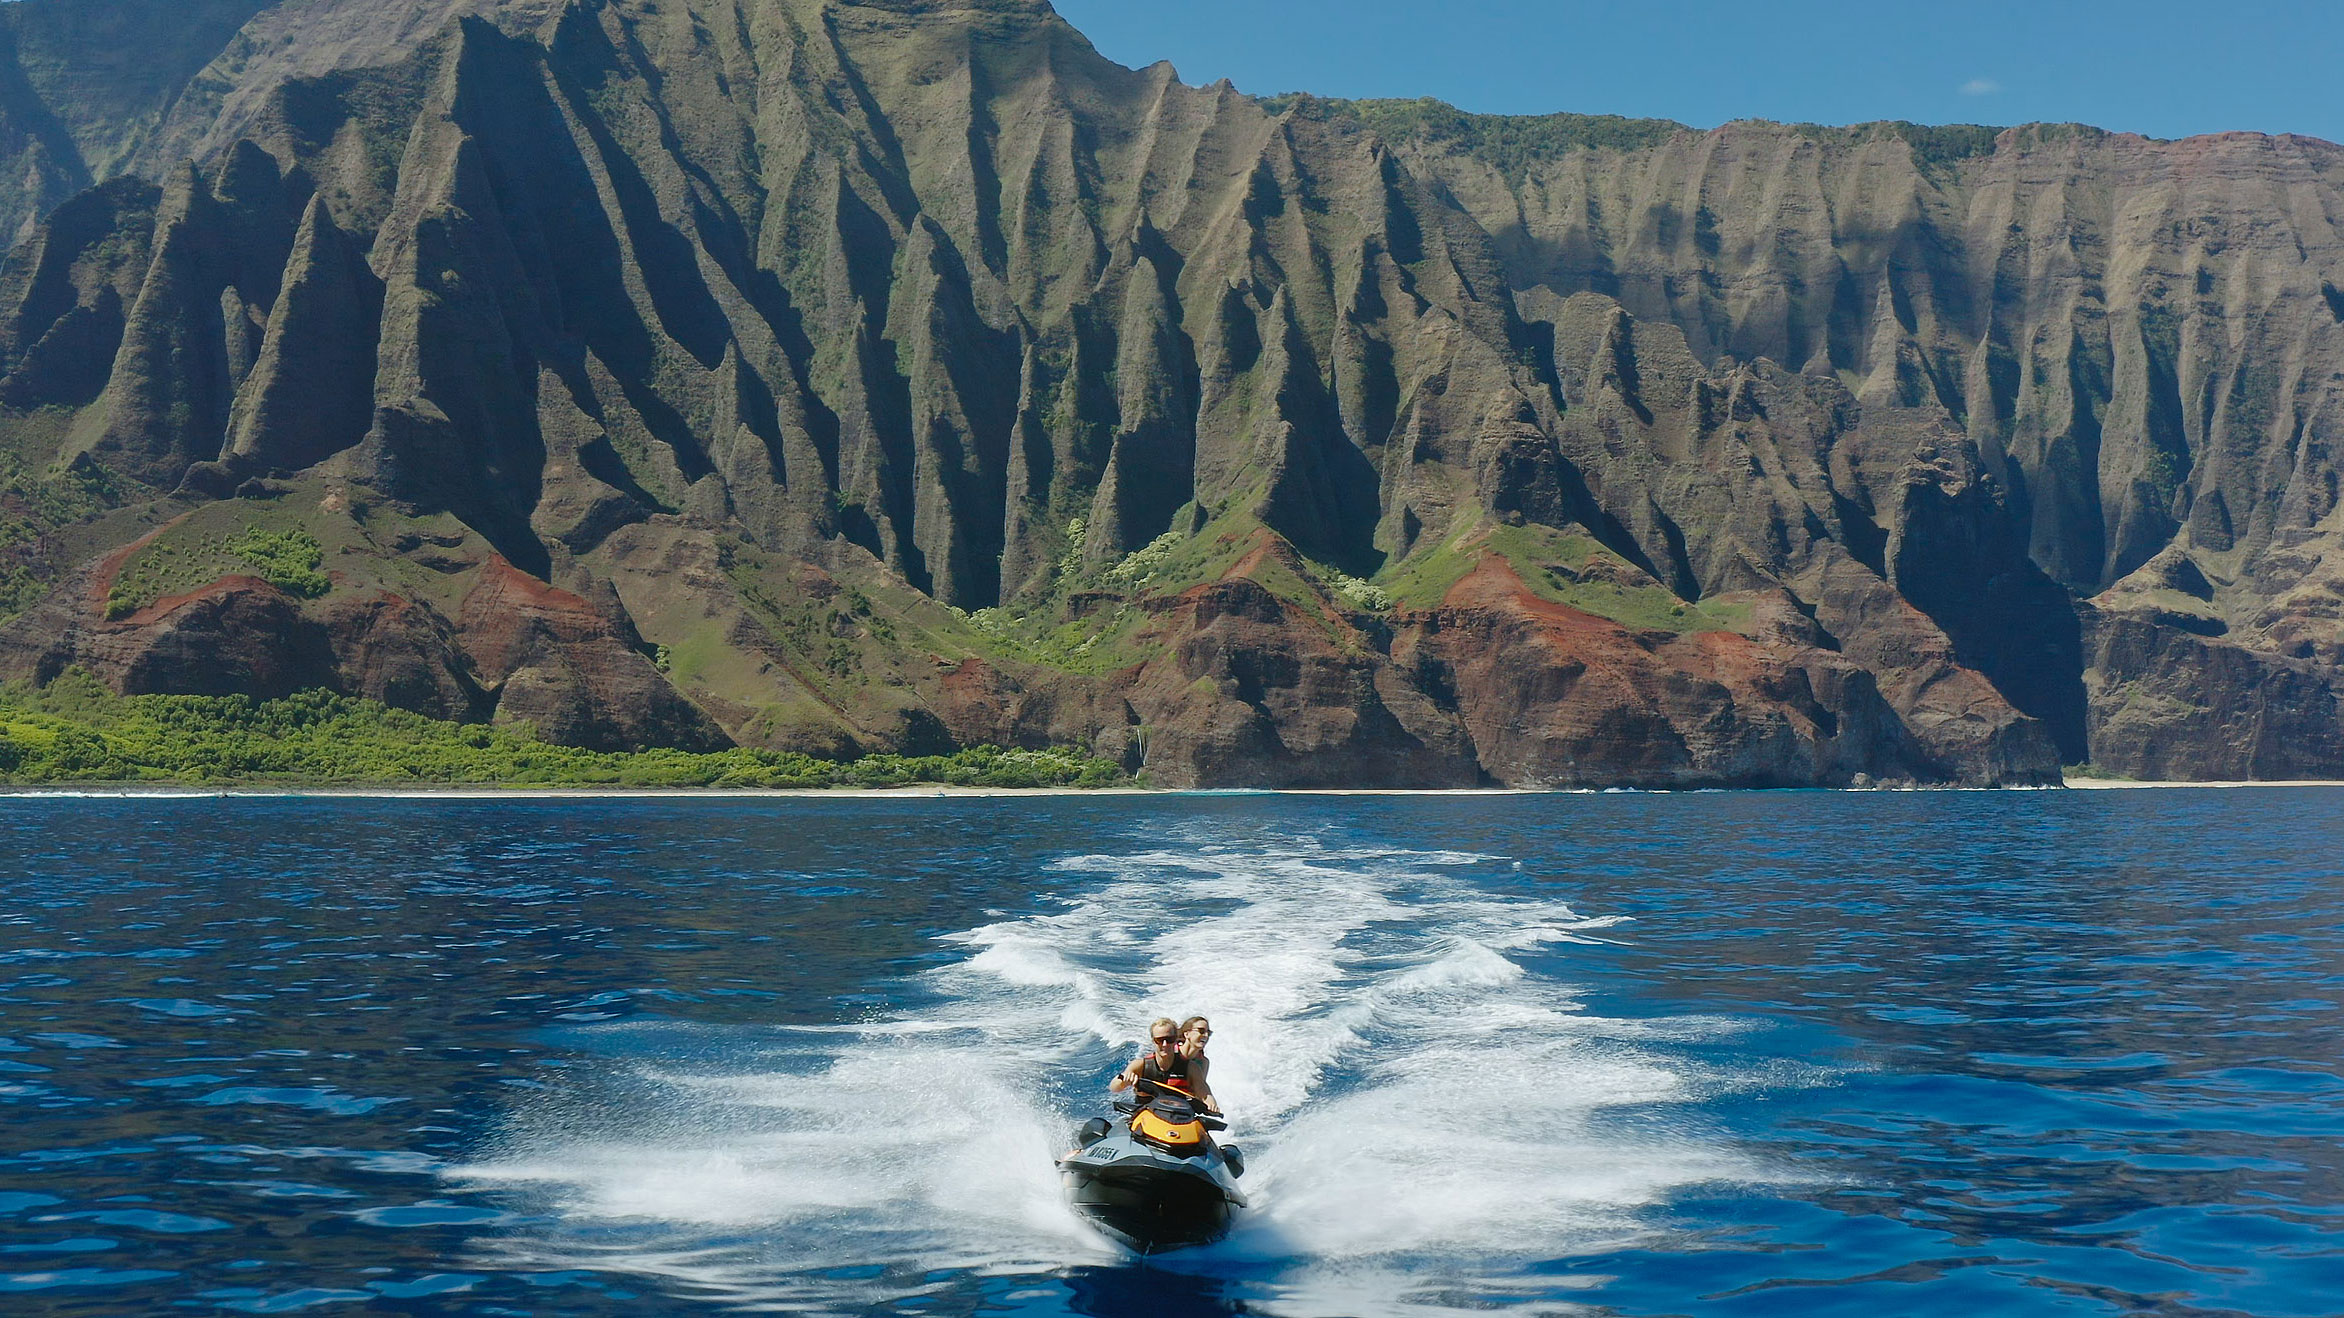 Chris Farro and his girlfriend Sea-Doo trip in Hawaii